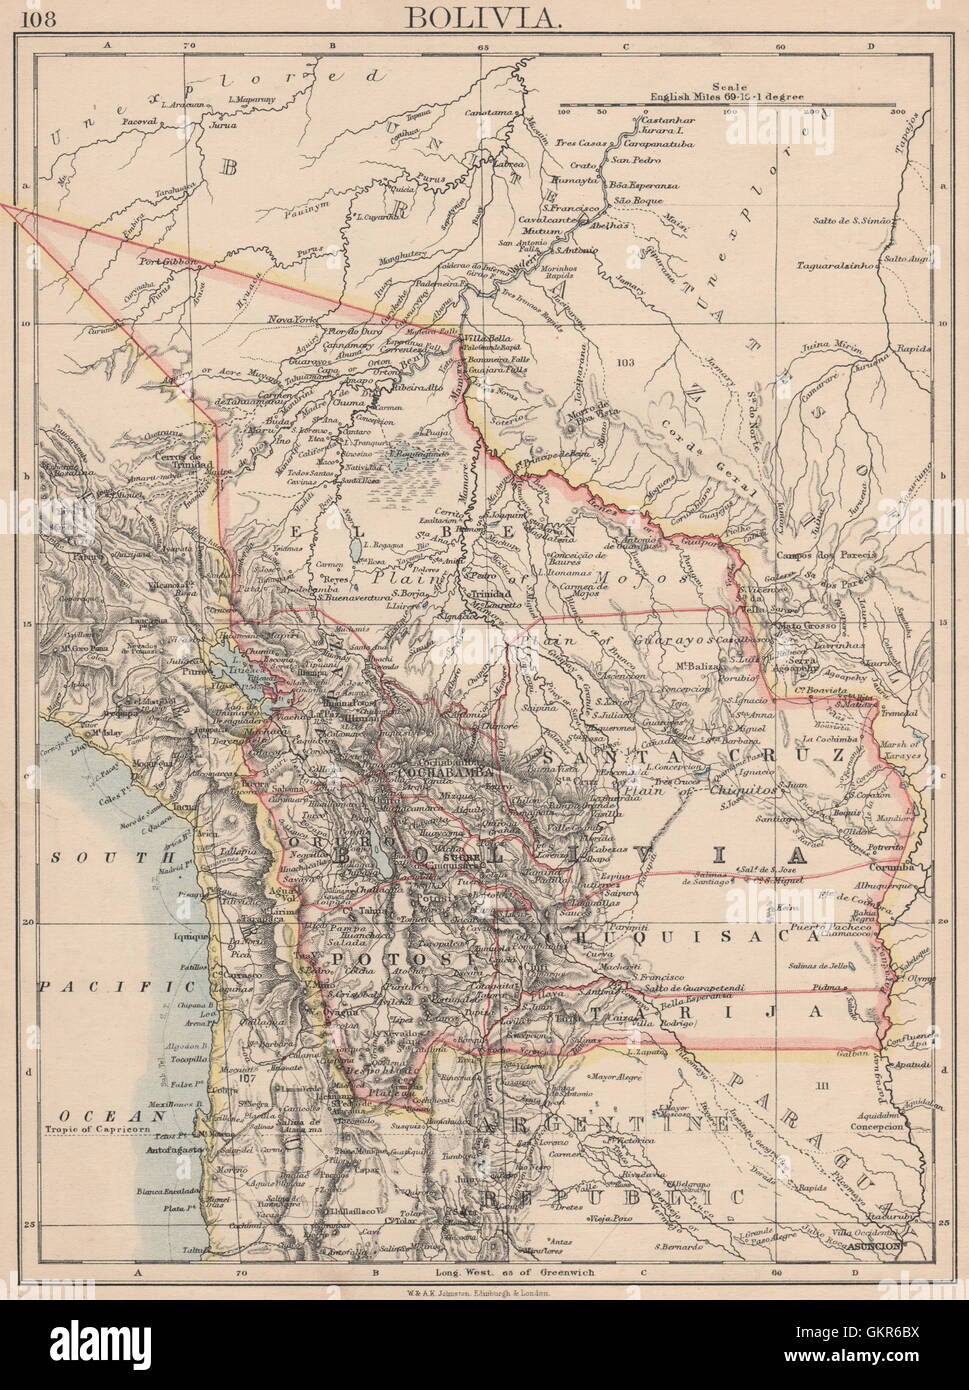 Bolivien. schließt ein Acre, 1899-1903 Krieg gegen Brasilien verloren. JOHNSTON, 1895-Karte Stockfoto